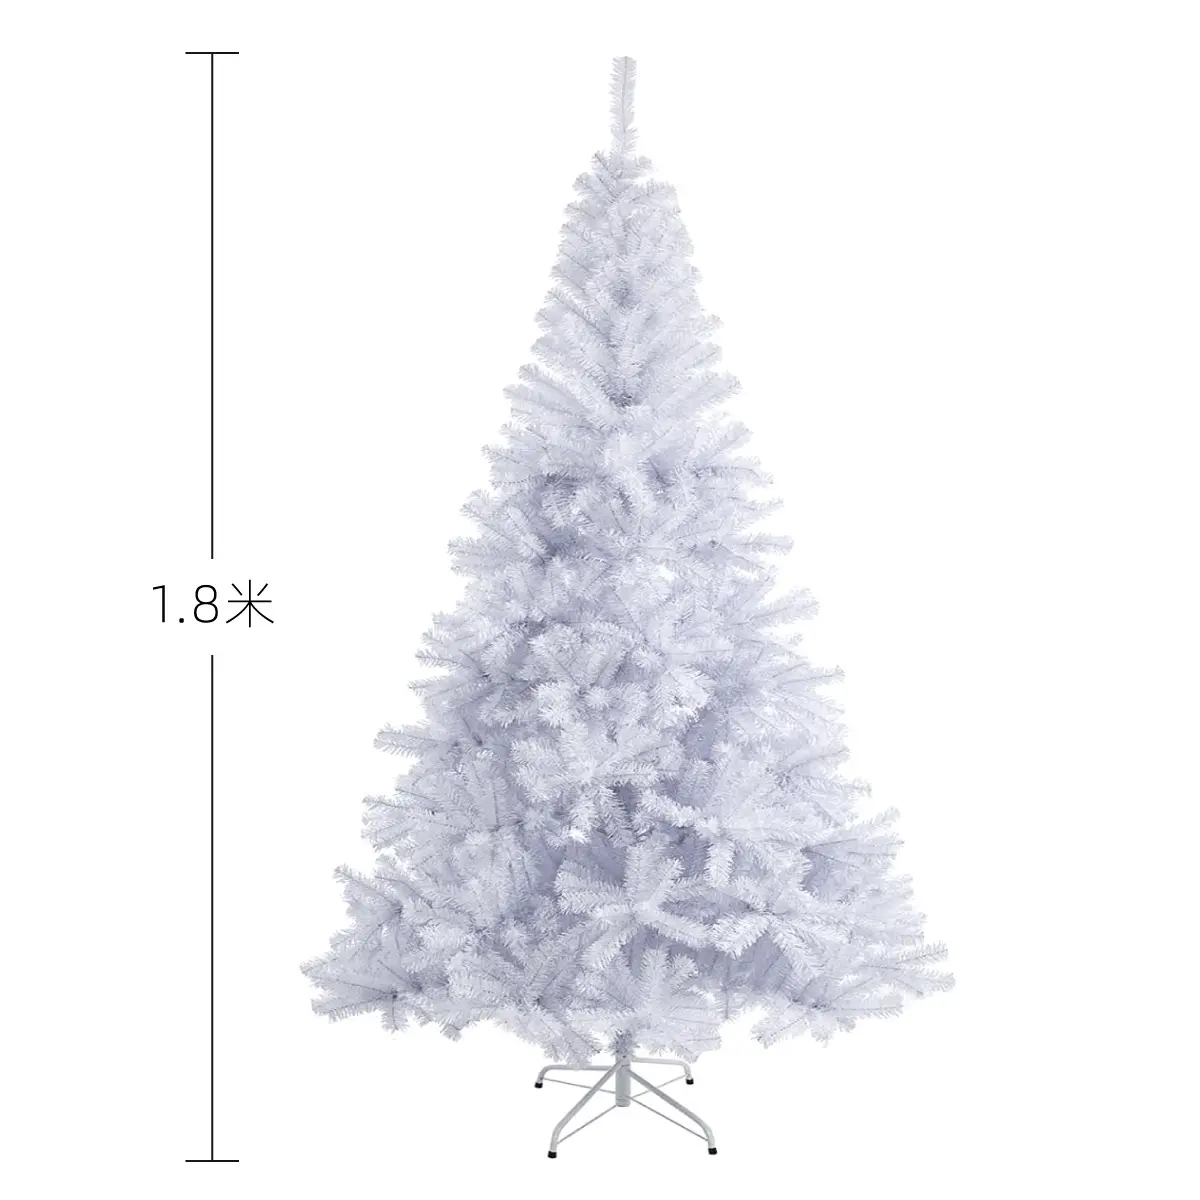 Personalizzazione albero di natale bianco del PVC di vendite calde di natale per la decorazione dell'interno dell'albero di natale